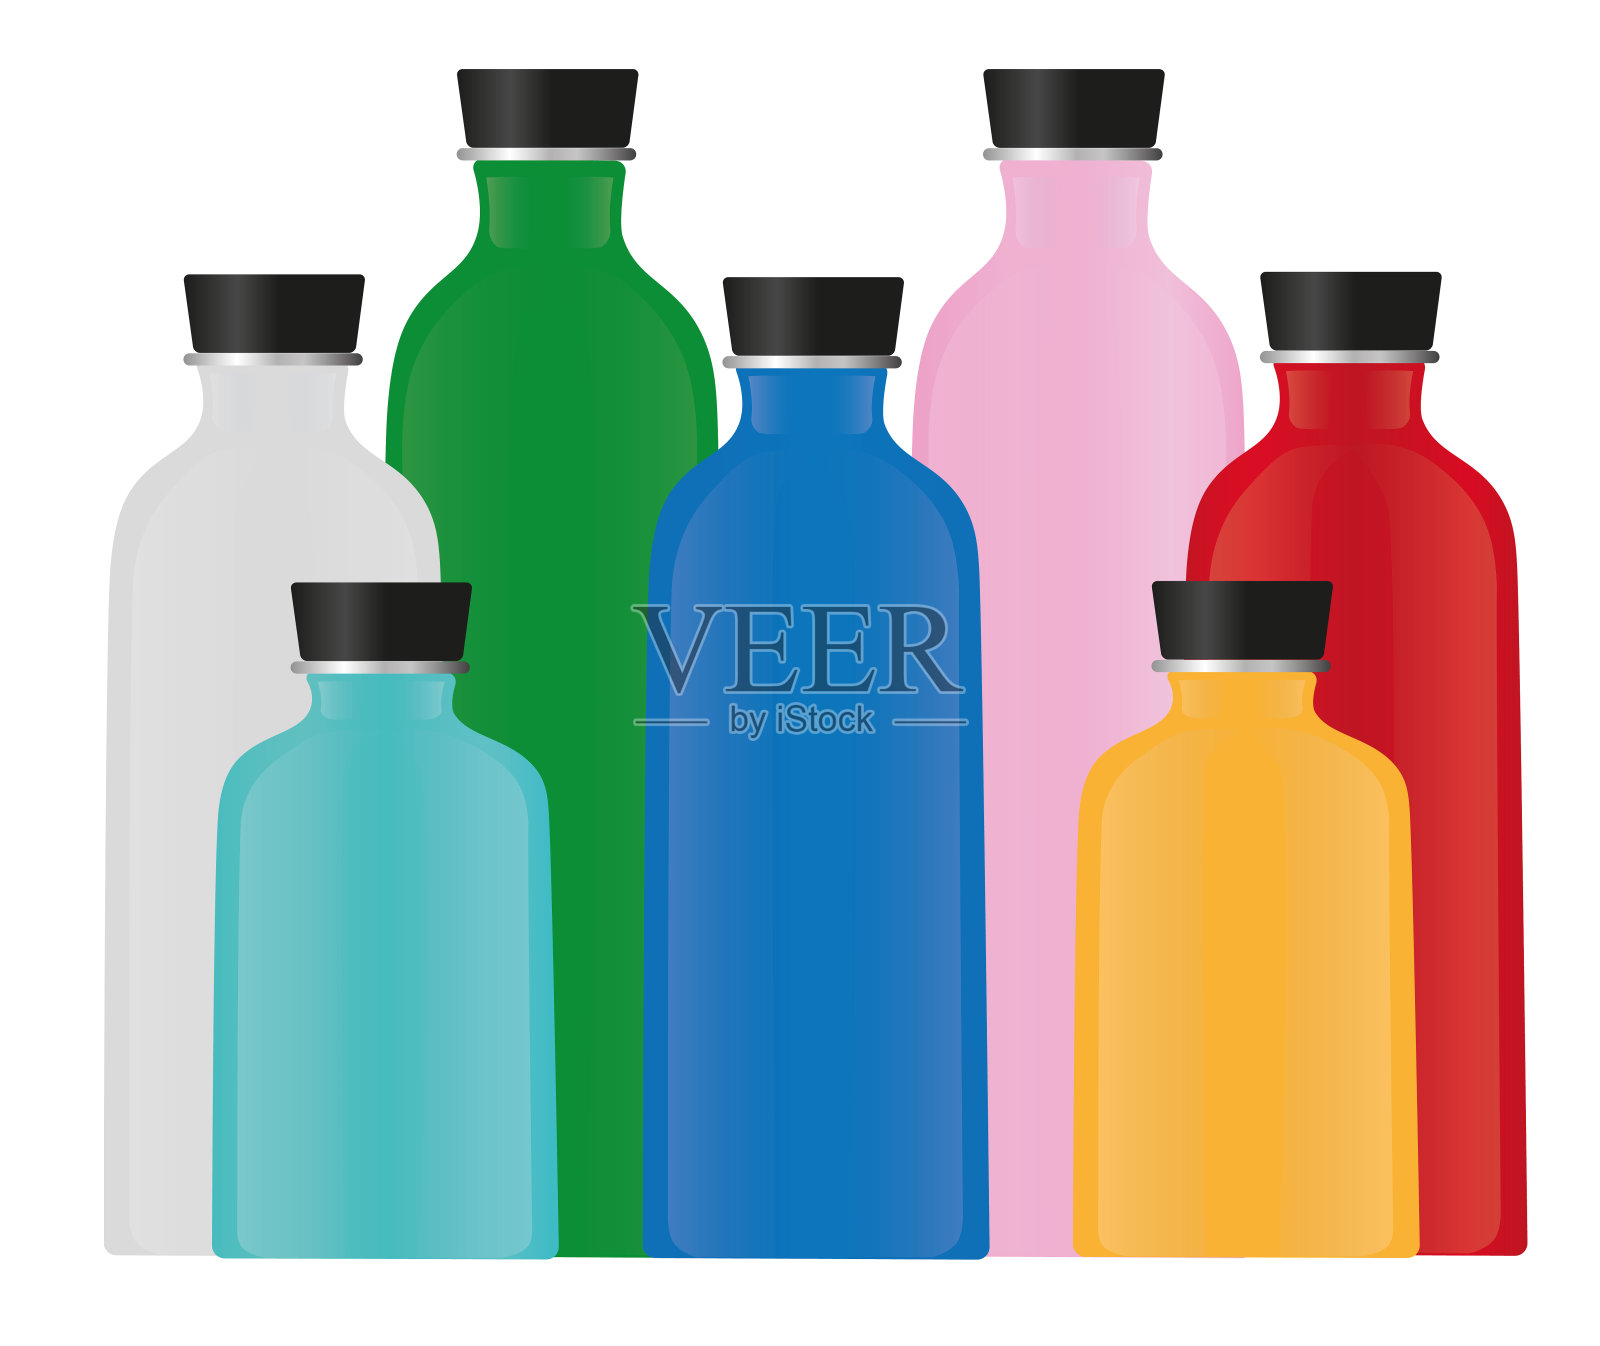 不同颜色的水瓶插画图片素材